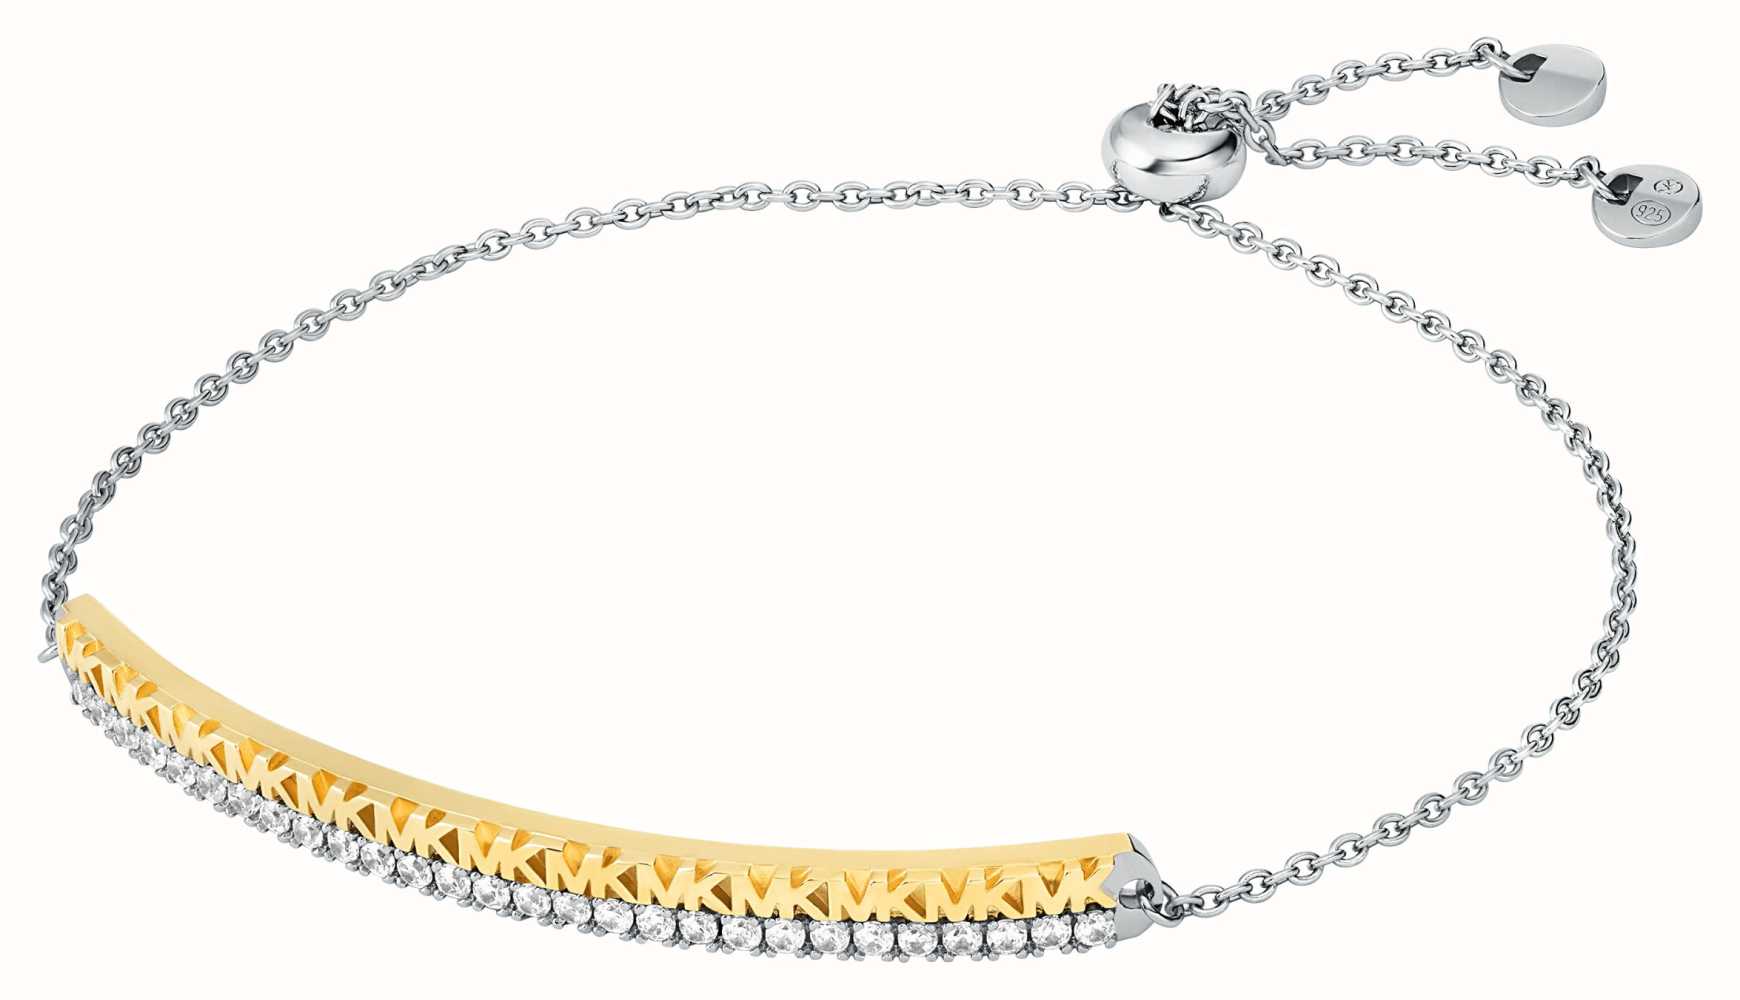 Amazoncom Michael Kors Silver Tone Fulton Hinge Bangle Bracelet  Clothing Shoes  Jewelry